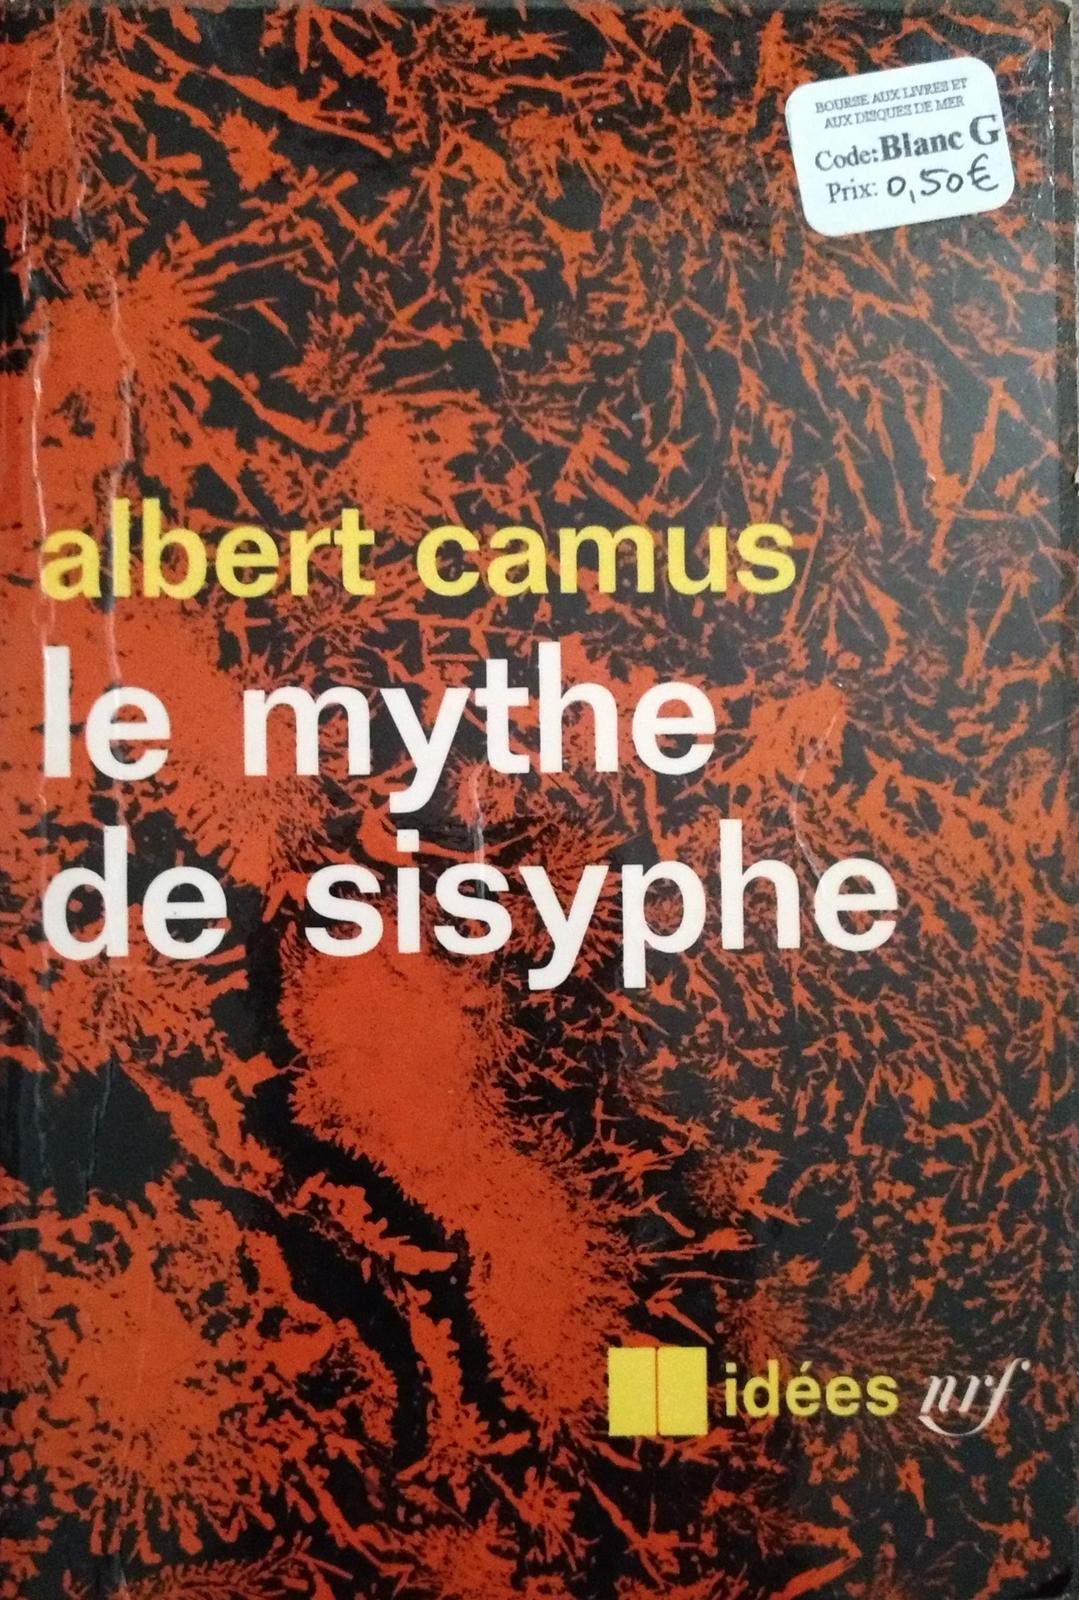 Albert Camus: Le Mythe de Sisyphe (French language, 1942, Éditions Gallimard)